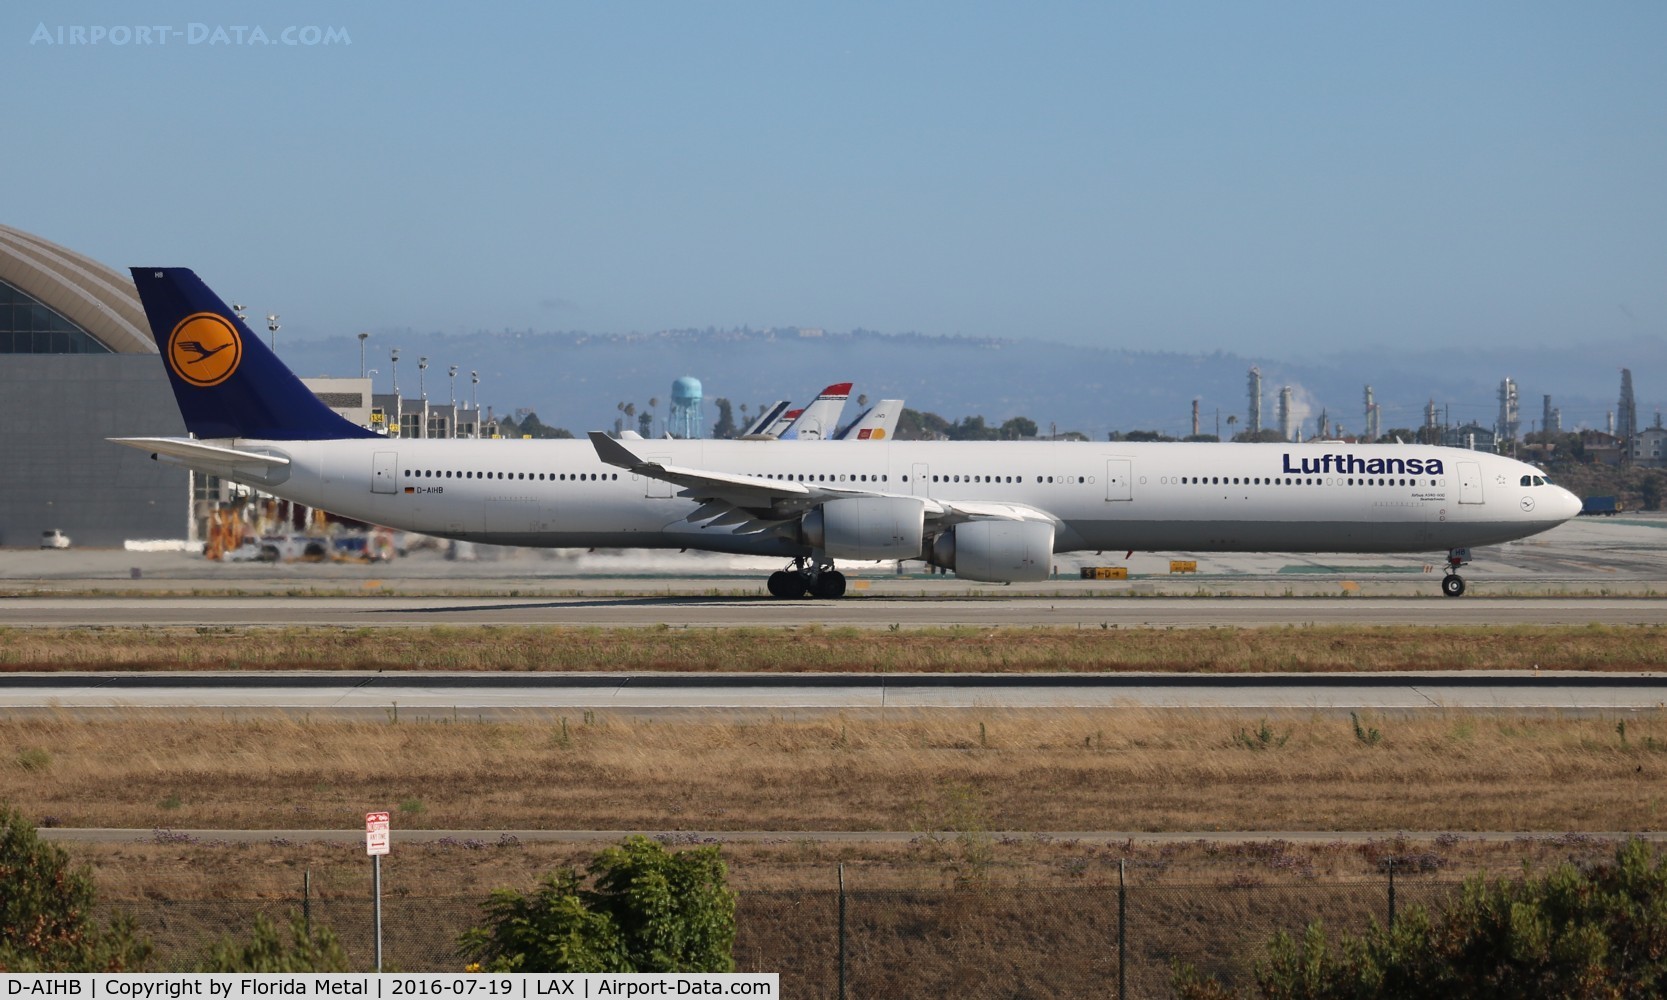 D-AIHB, 2003 Airbus A340-642 C/N 517, Lufthansa